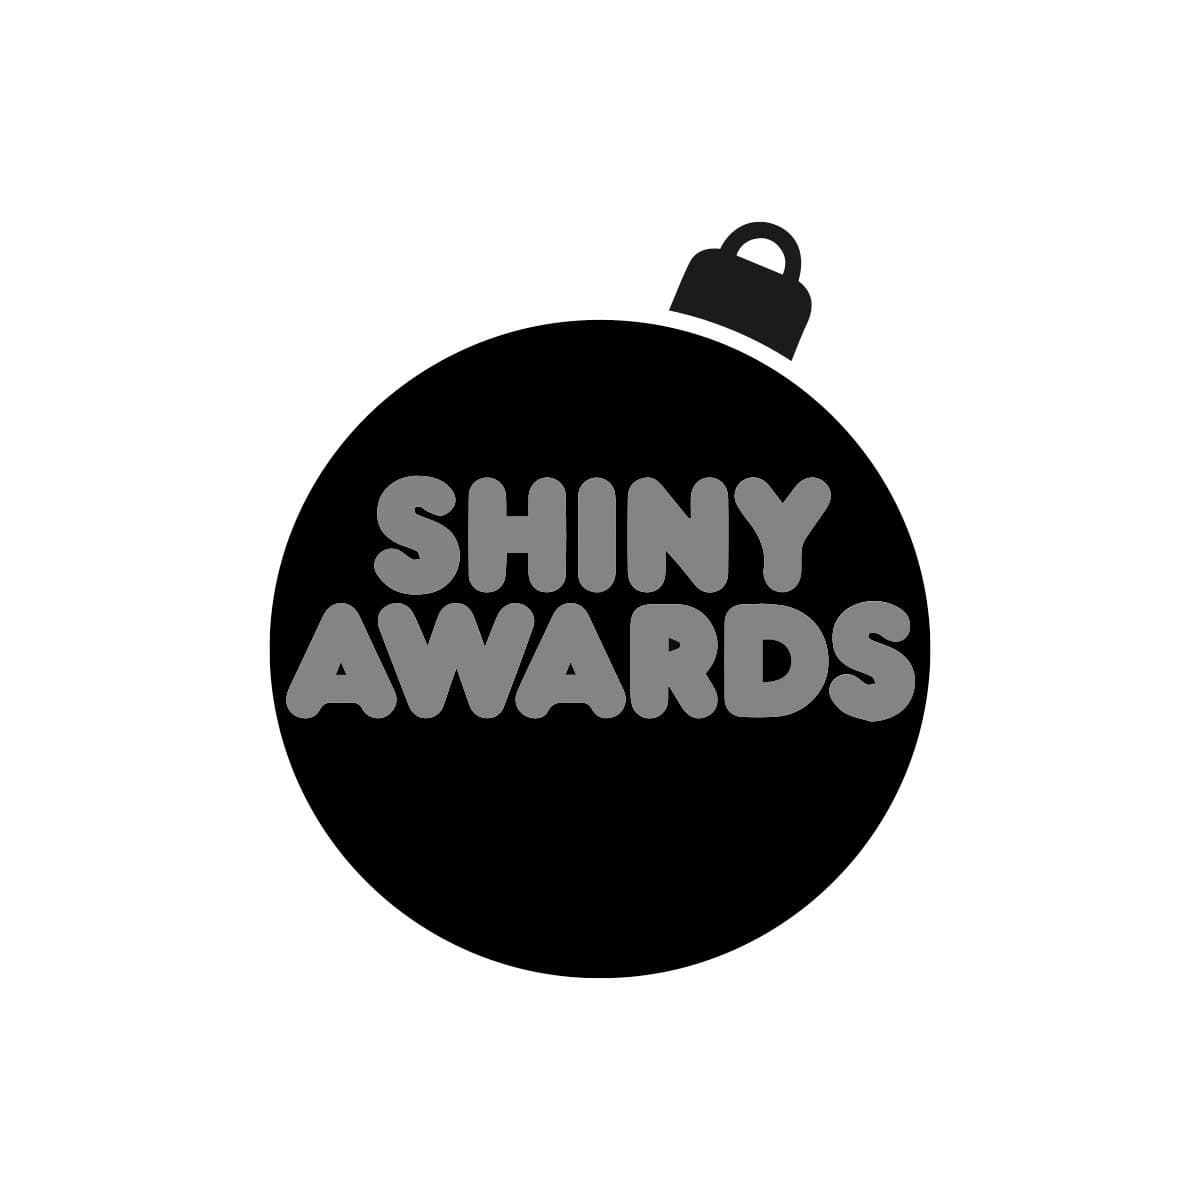 Shiny Awards